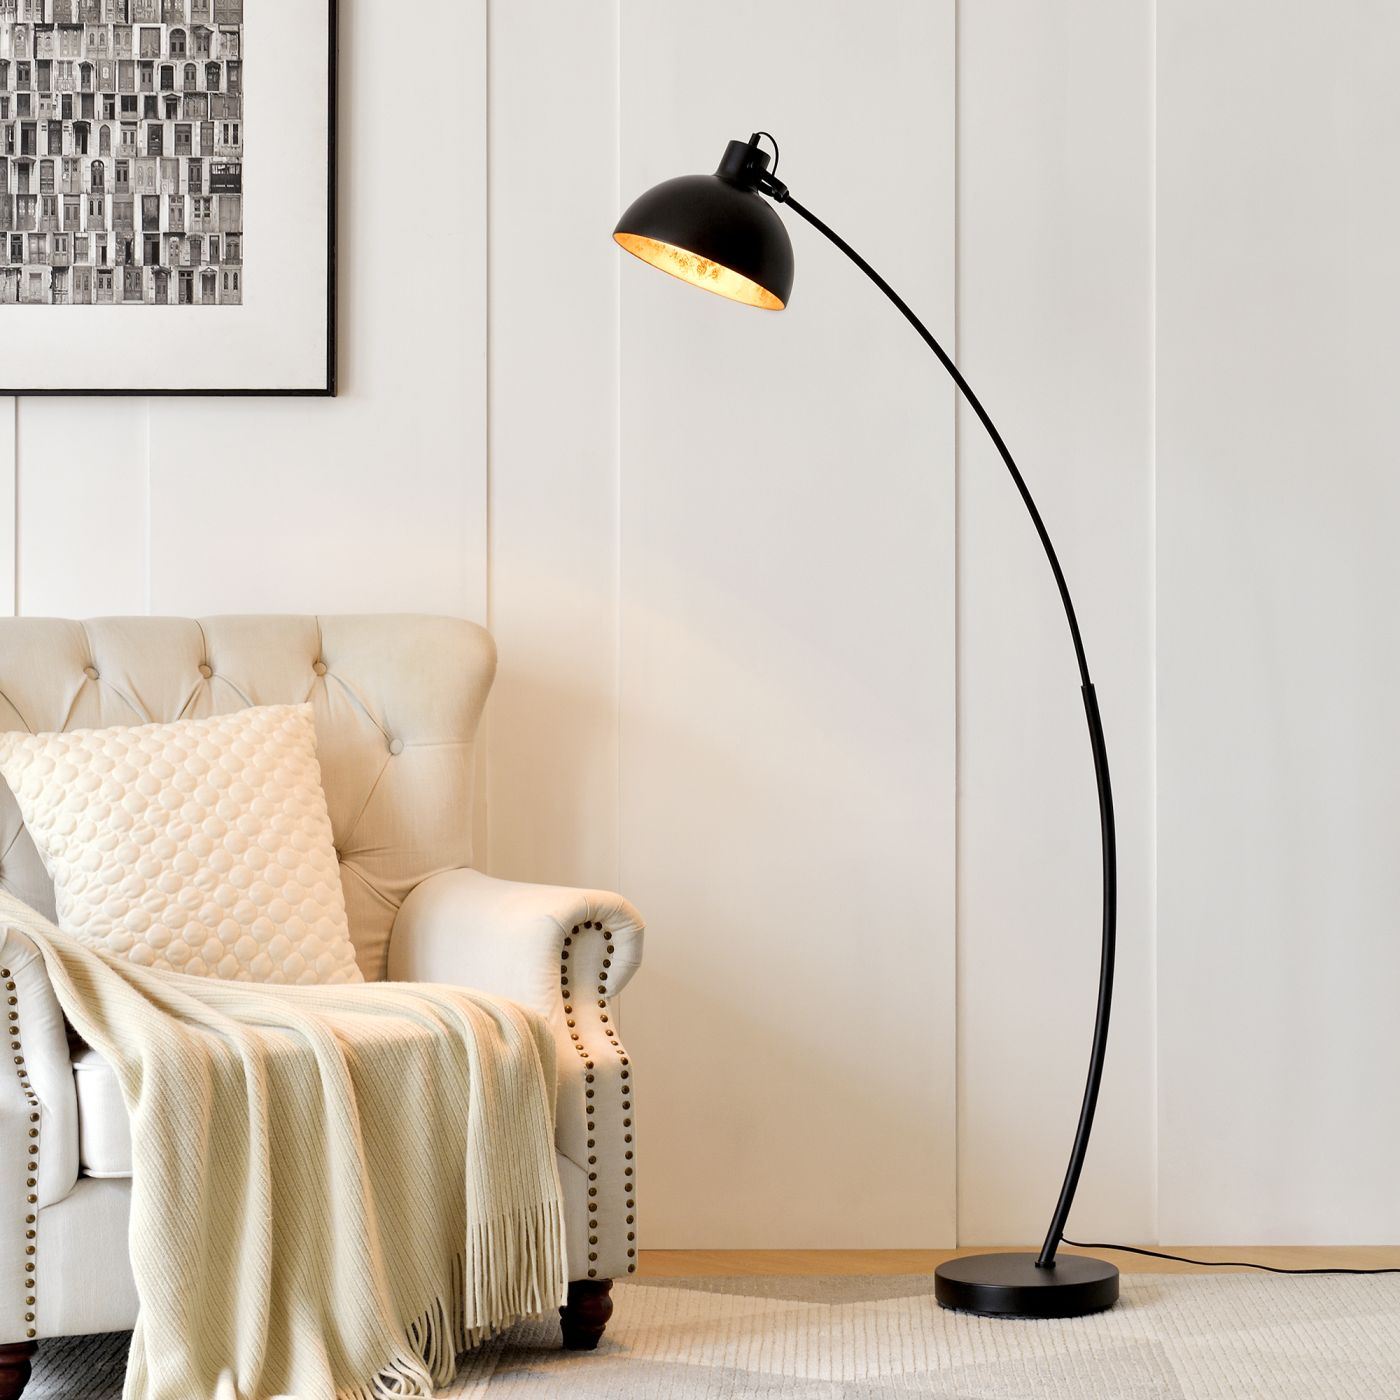 Vooruitgang Onbevredigend onbekend lux.pro] Vloerlamp staande lamp Derby metaal E27 160 cm zwart | premiumXL